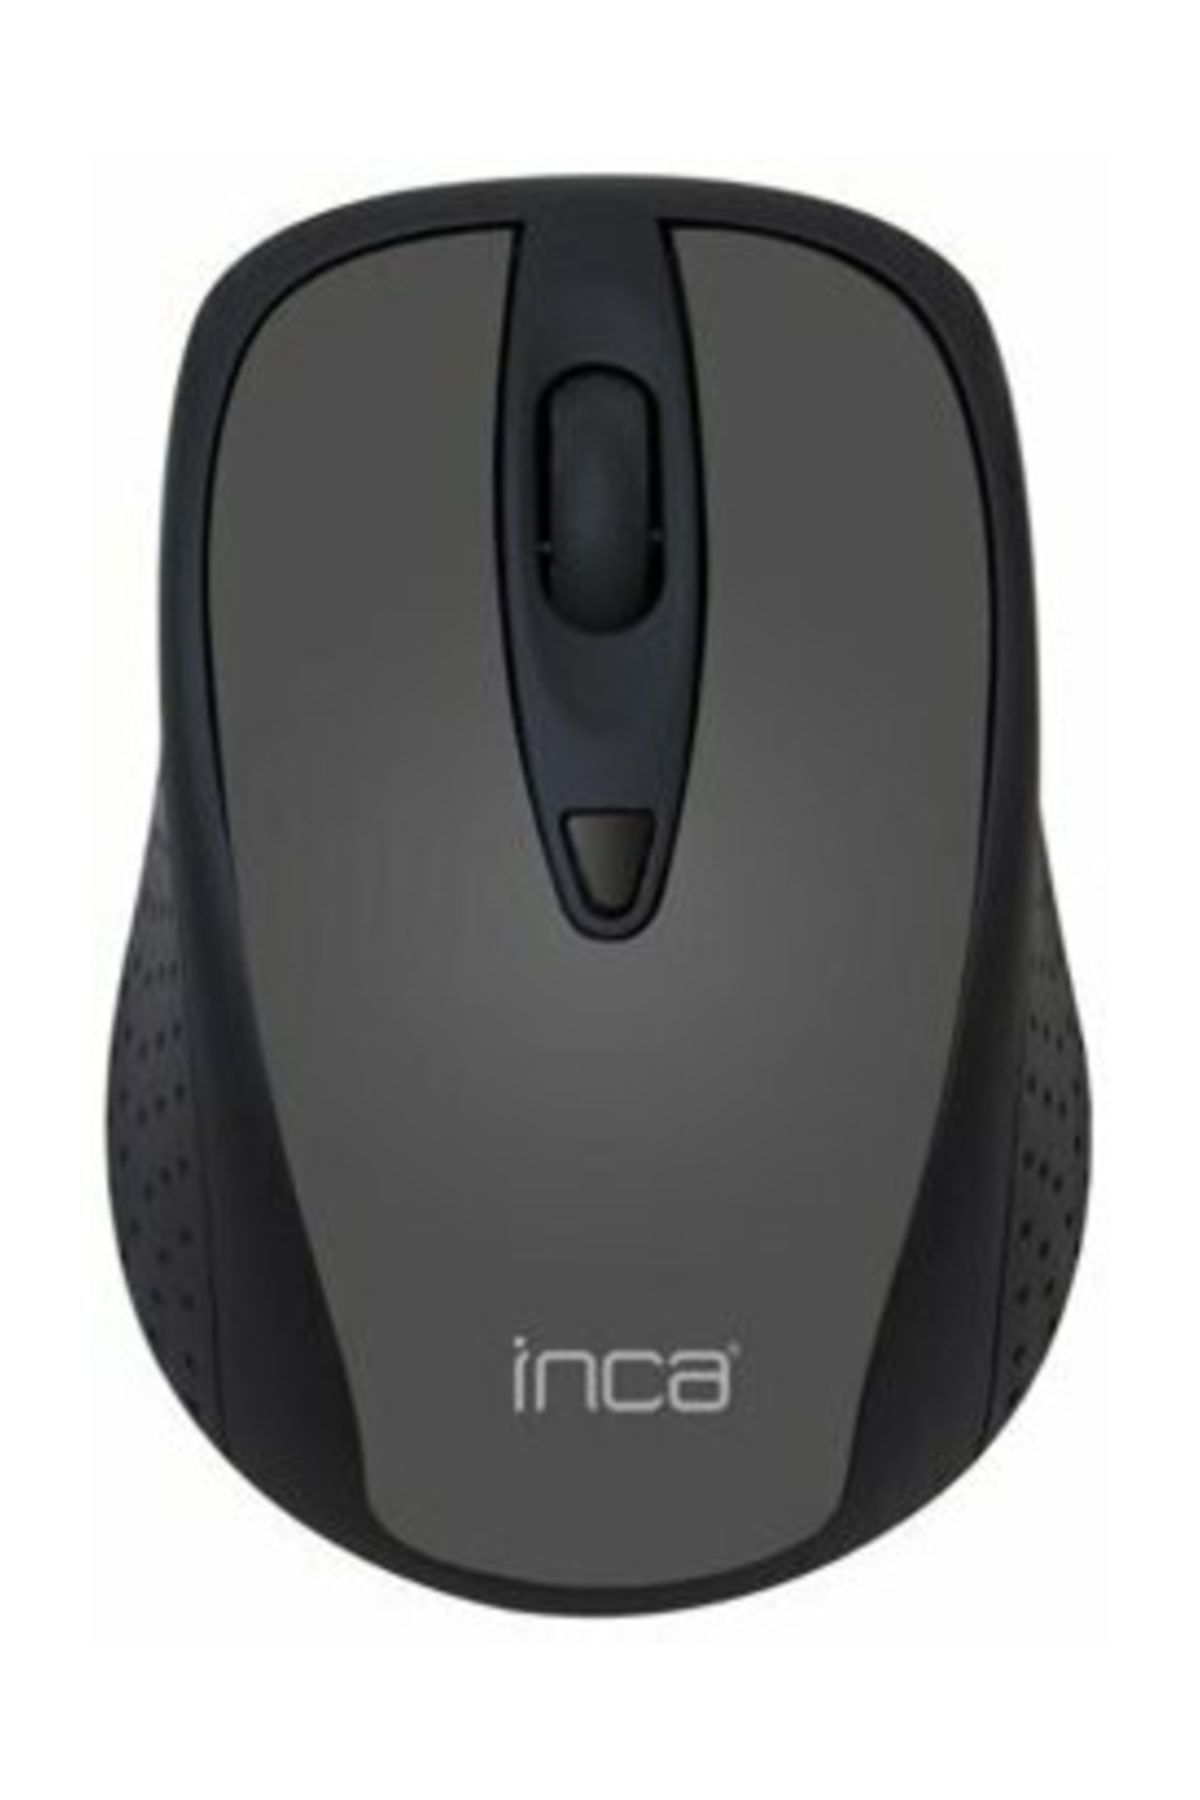 Inca Iwm-201rg Kablosuz Nano Mouse (gri)